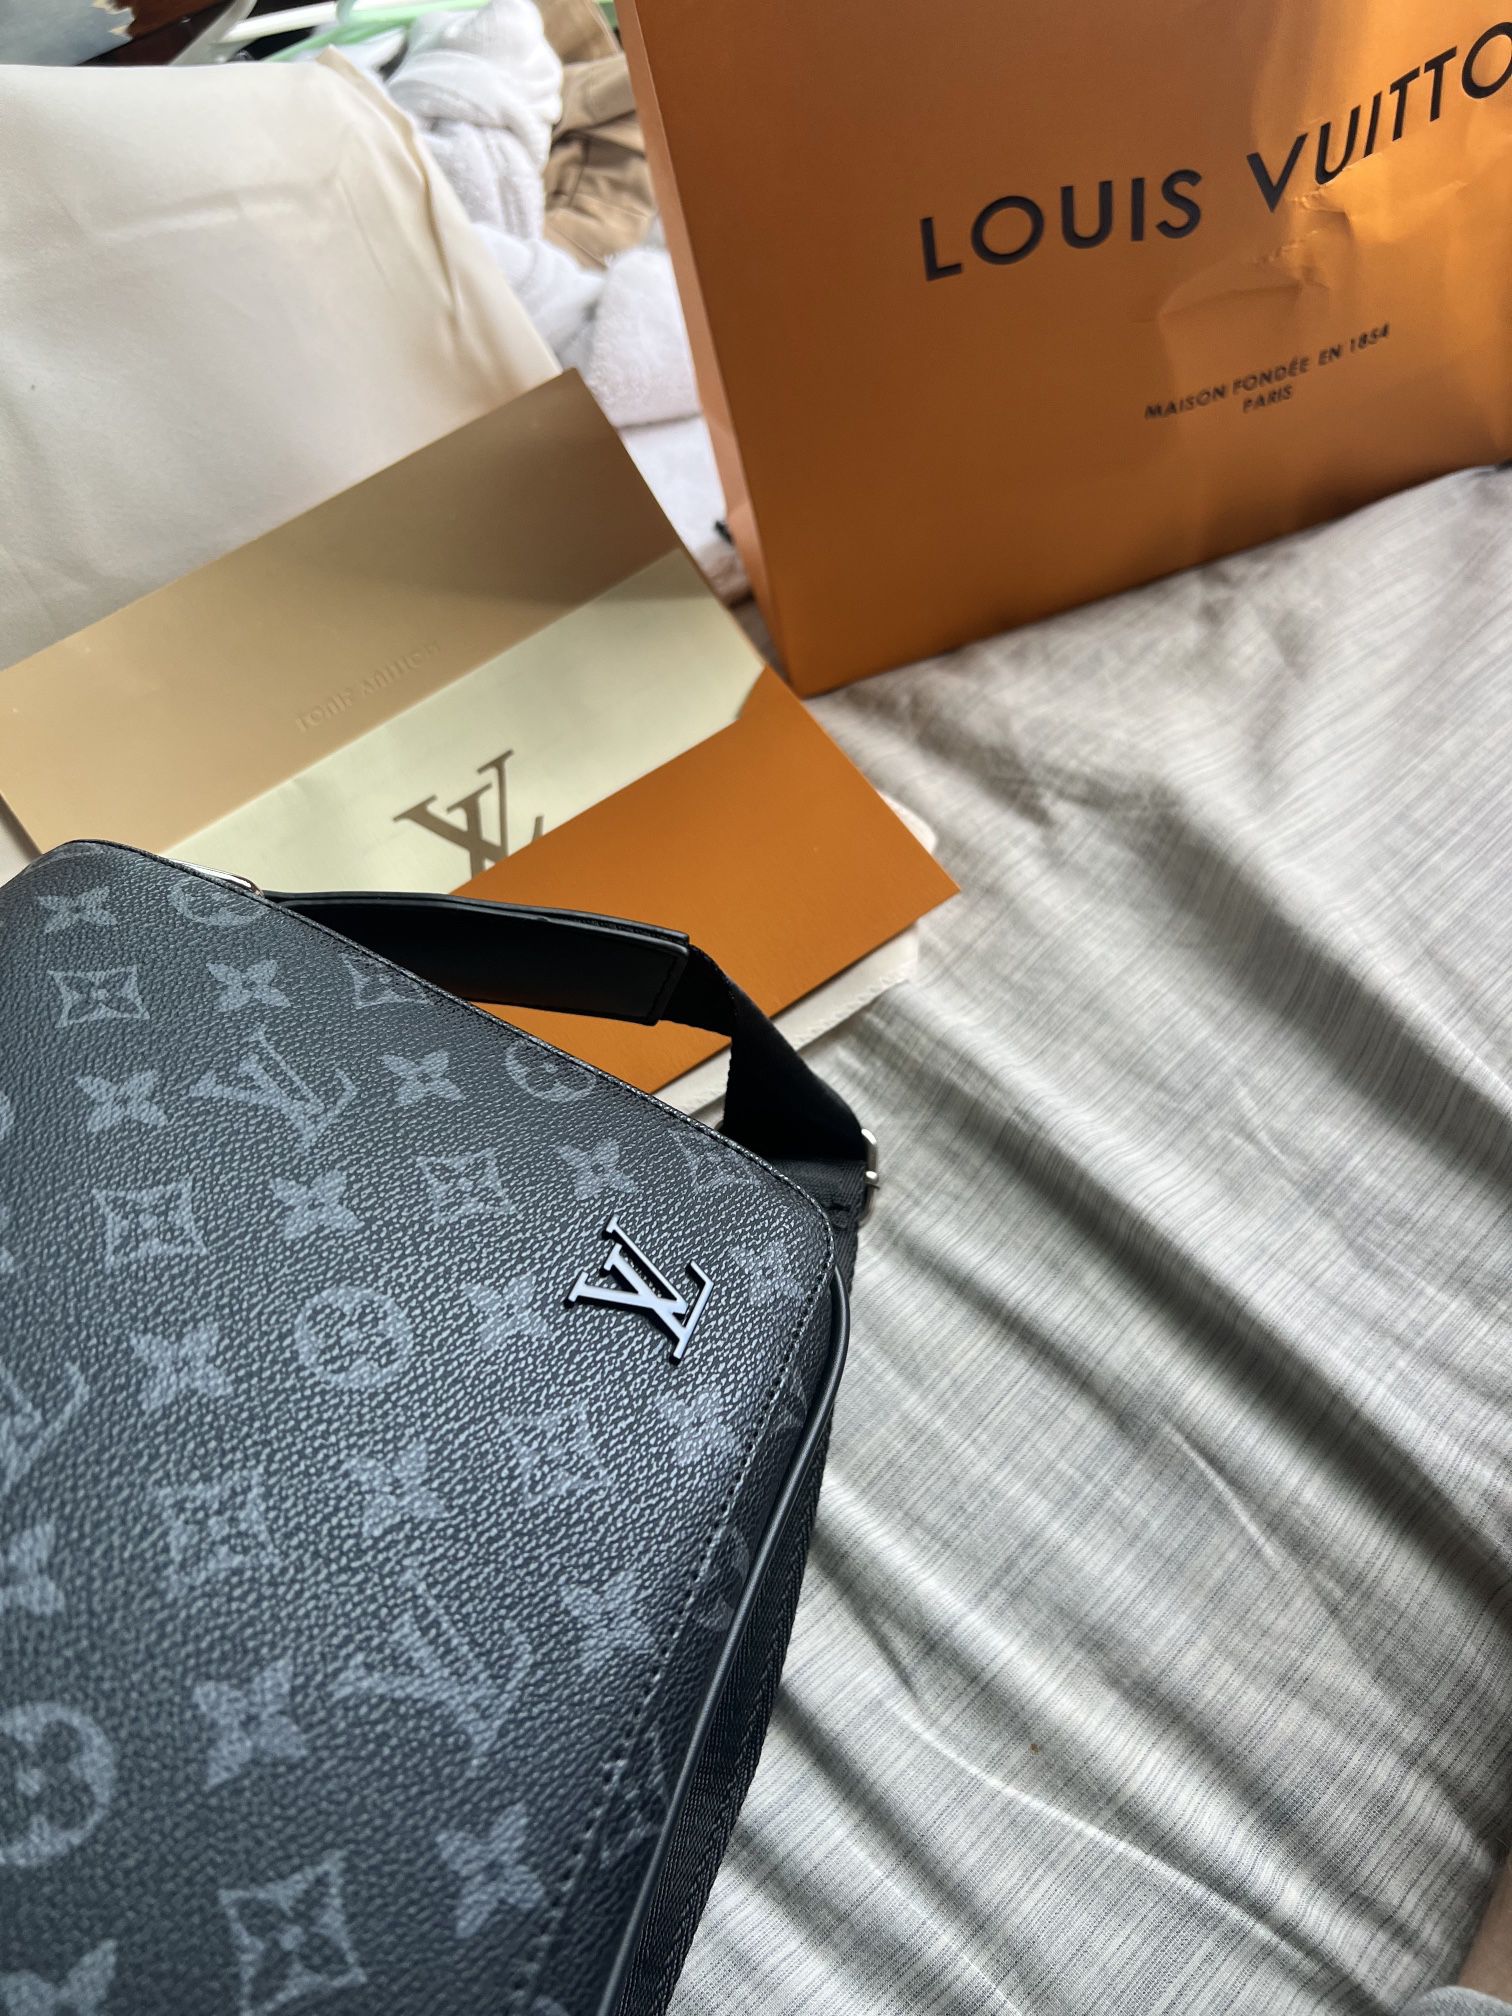 Louis Vuitton men's messenger, purse - clothing & accessories - by owner -  apparel sale - craigslist